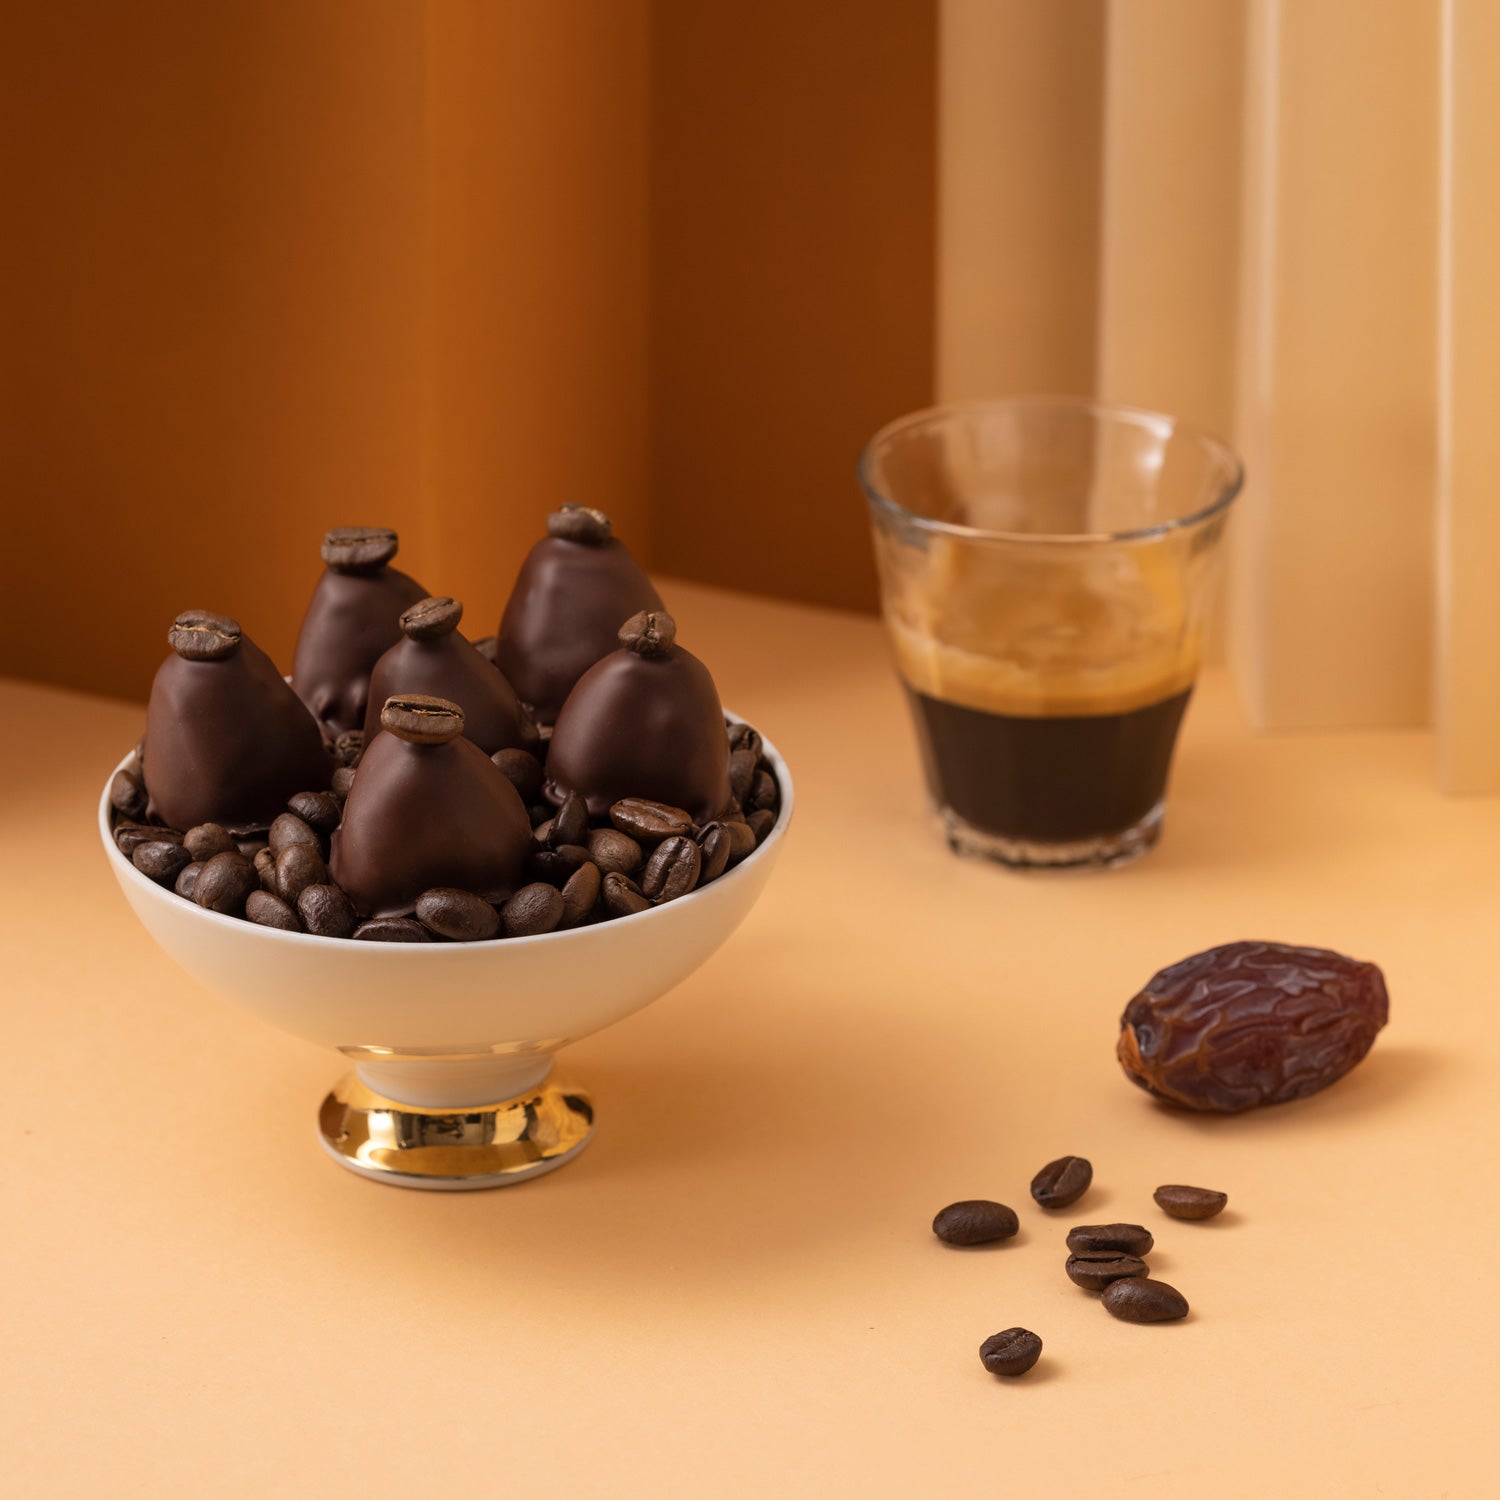 Tasse Kaffee oder Espresso mit Crema, einer Medjool Dattel, geröstete Kaffeebohnen und dazu Pralinen von djoon.